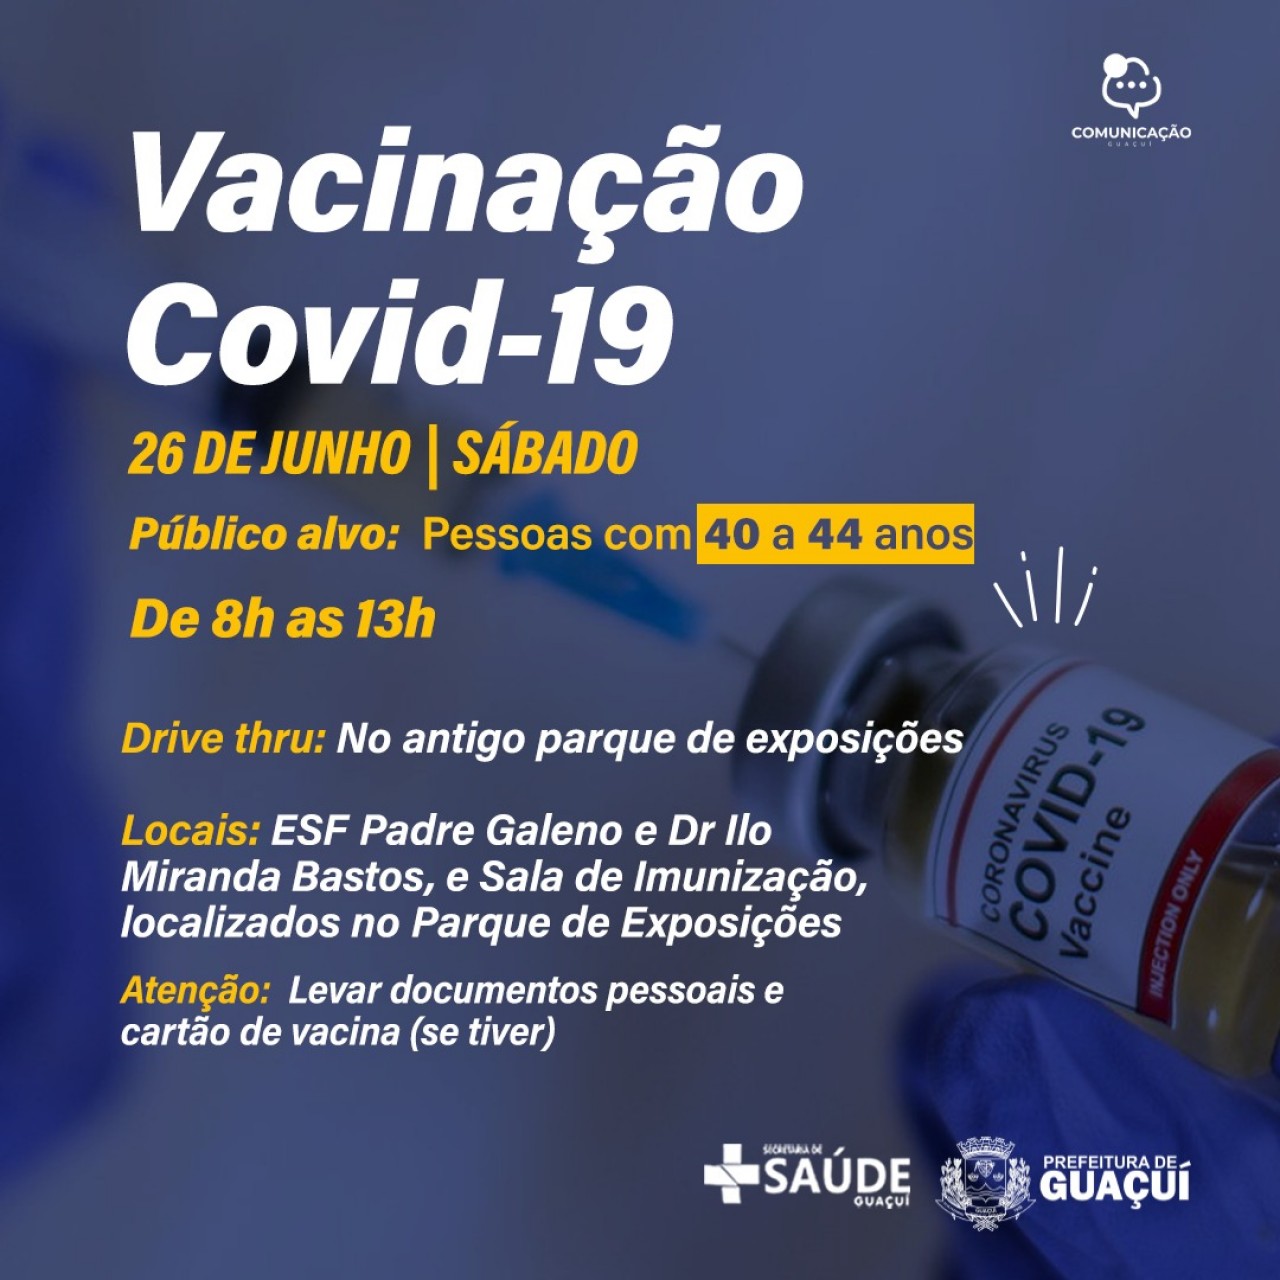 Vacinação Covid-19 para pessoas de 40 a 44 anos inicia neste sábado (26)